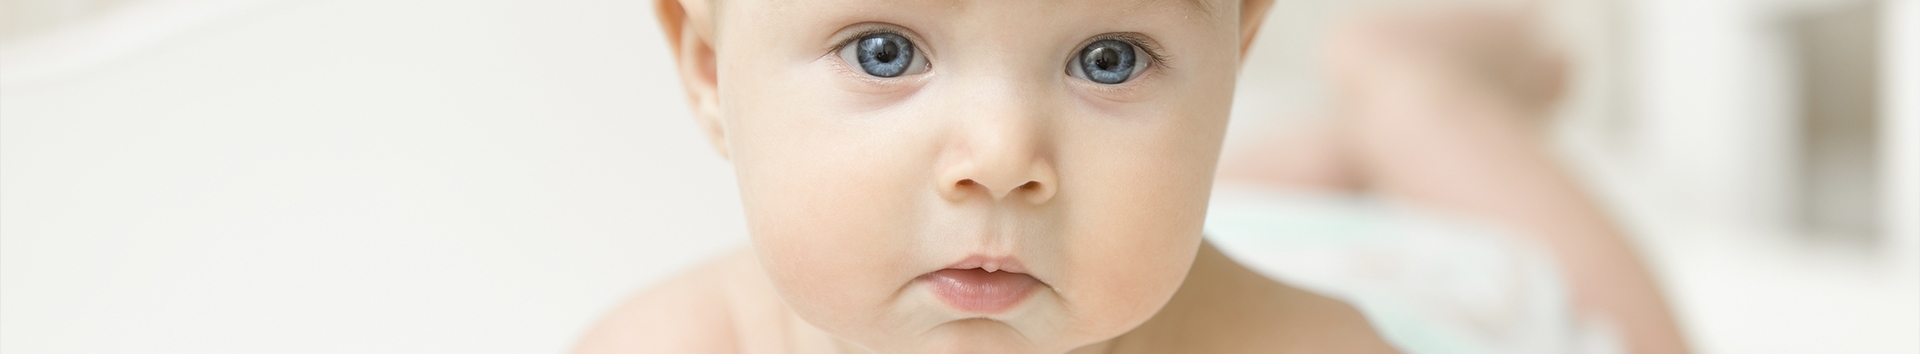 Sintomas de refluxo oculto em bebê: Essa solução vai salvar seu filho!